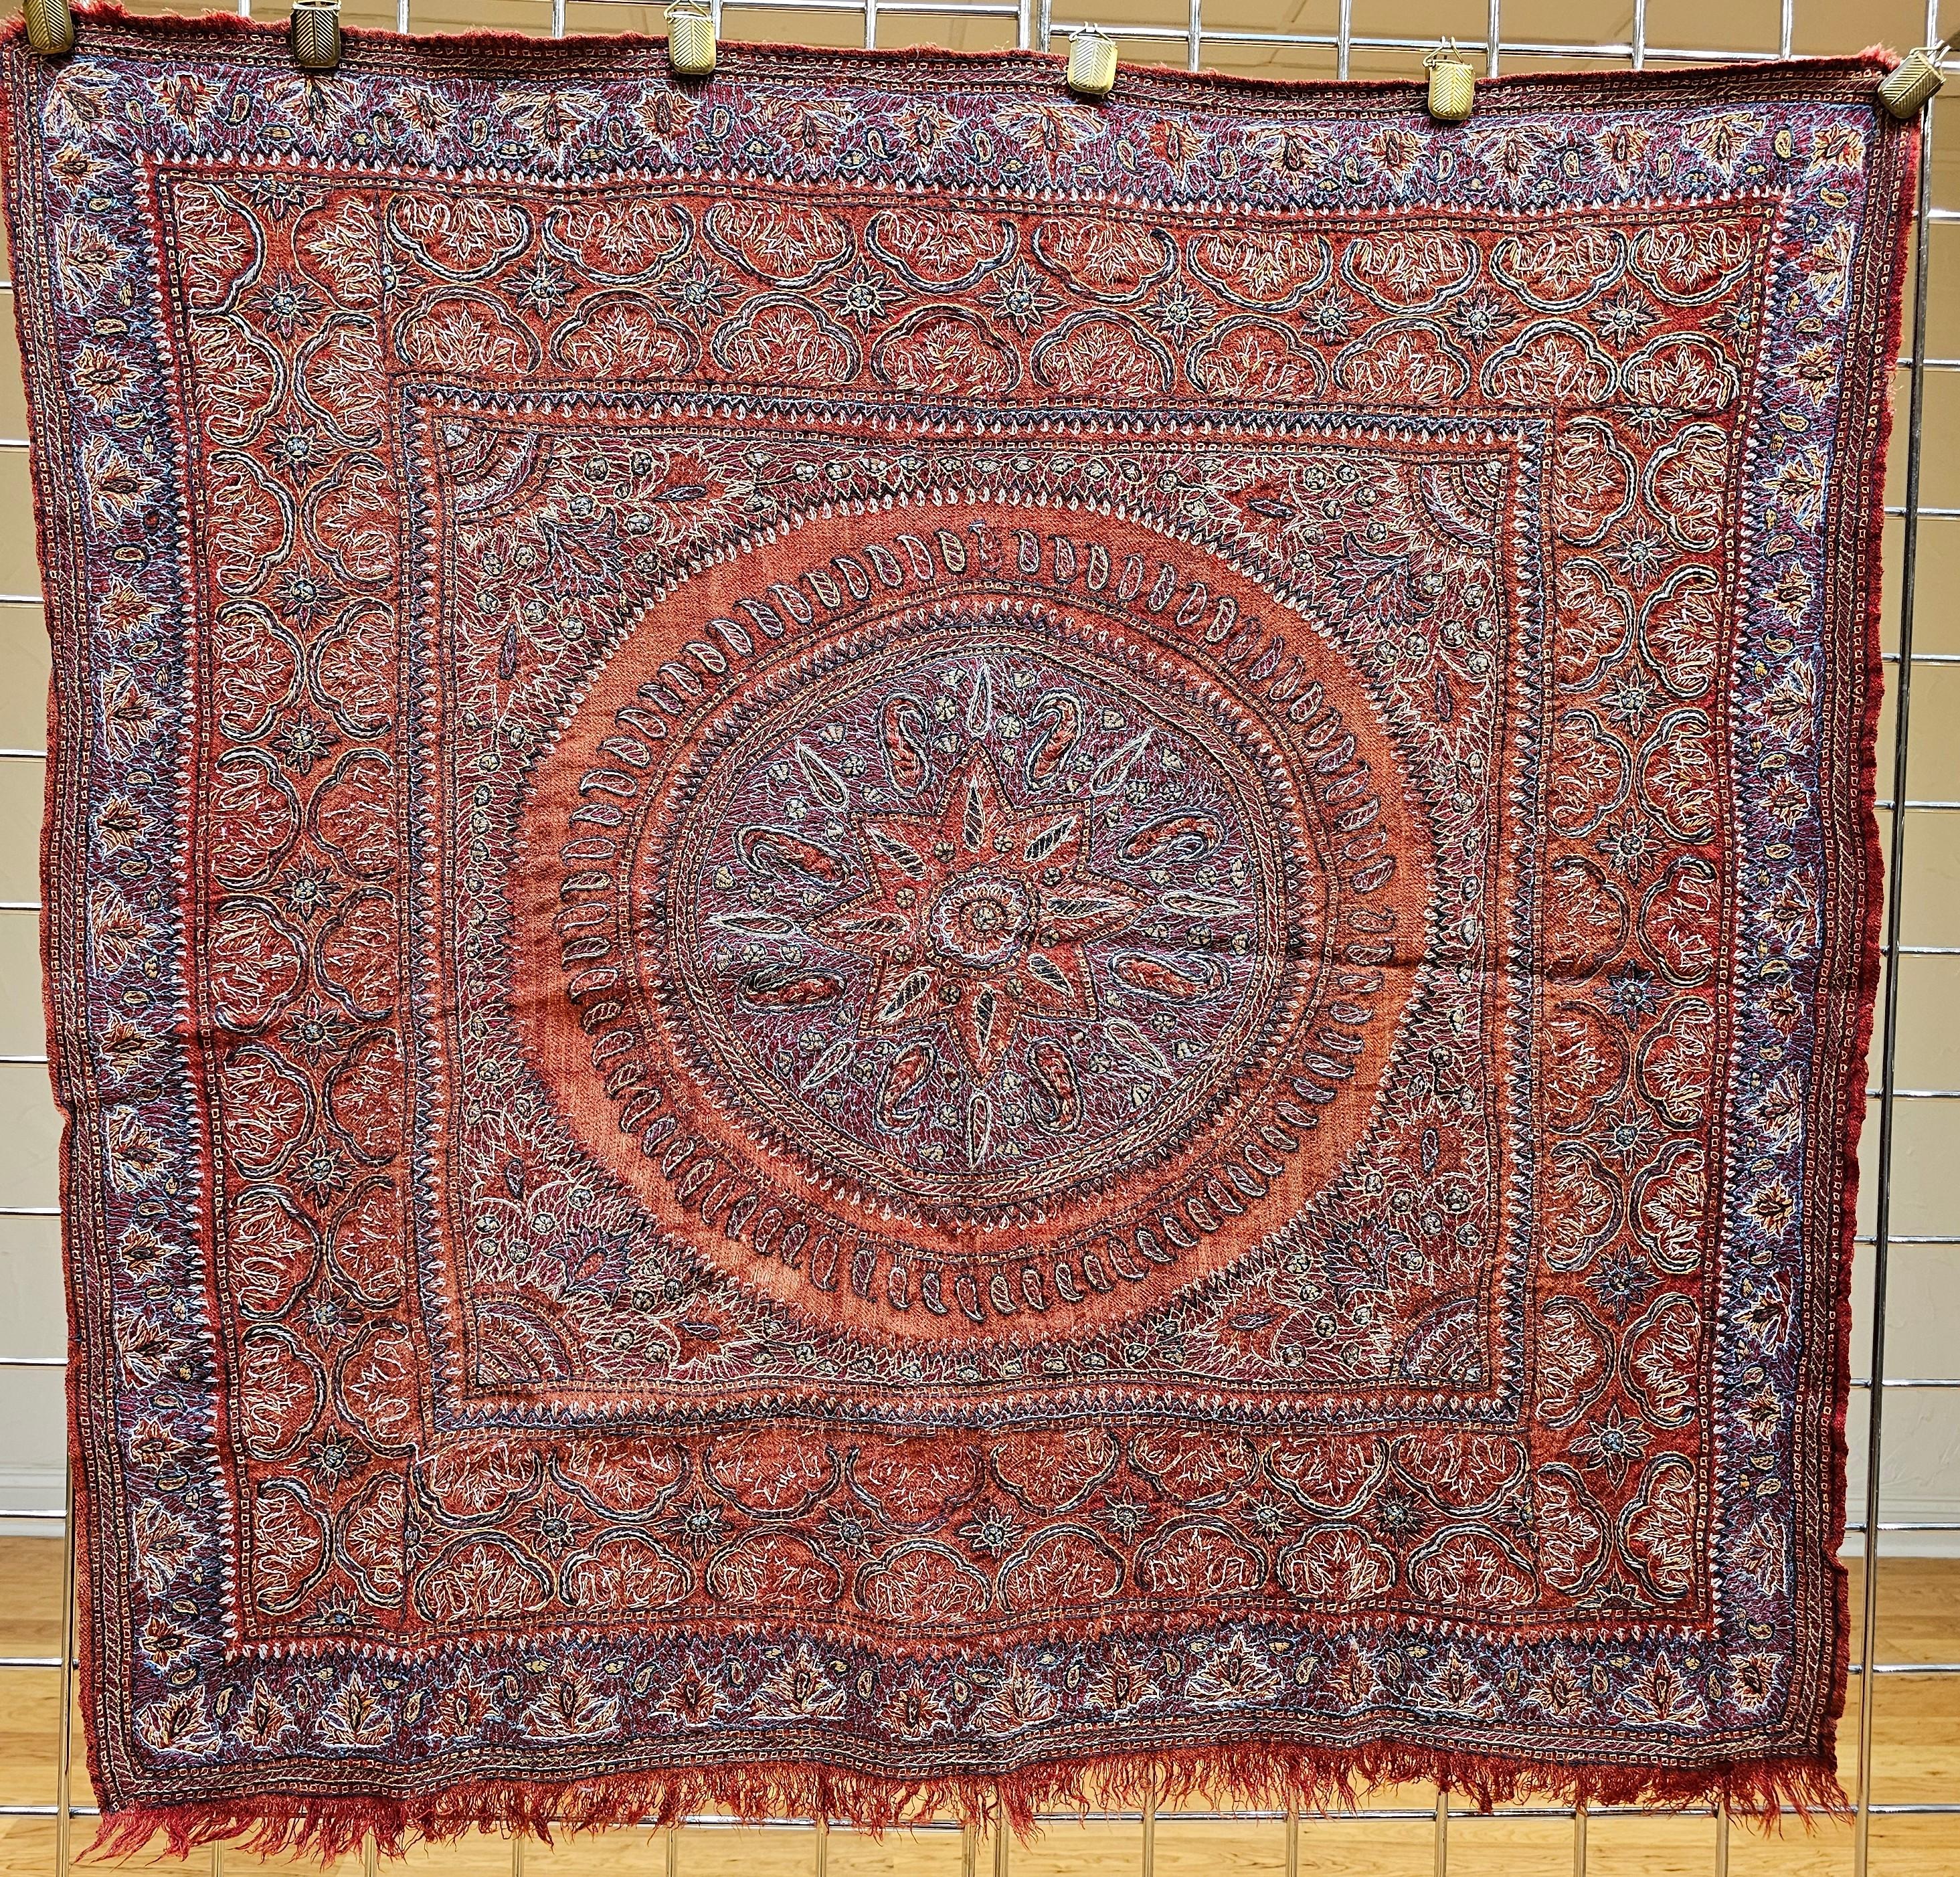 Die charakteristische persische Kerman-Suzani (Termeh-Stickerei auf Persisch) stammt aus der alten Stadt Kerman in Persien. Der handgestickte Wandteppich ist auf einem roten Stoffgrund mit Stickereimustern in Blau, Lila, Gelb und Braun. Das